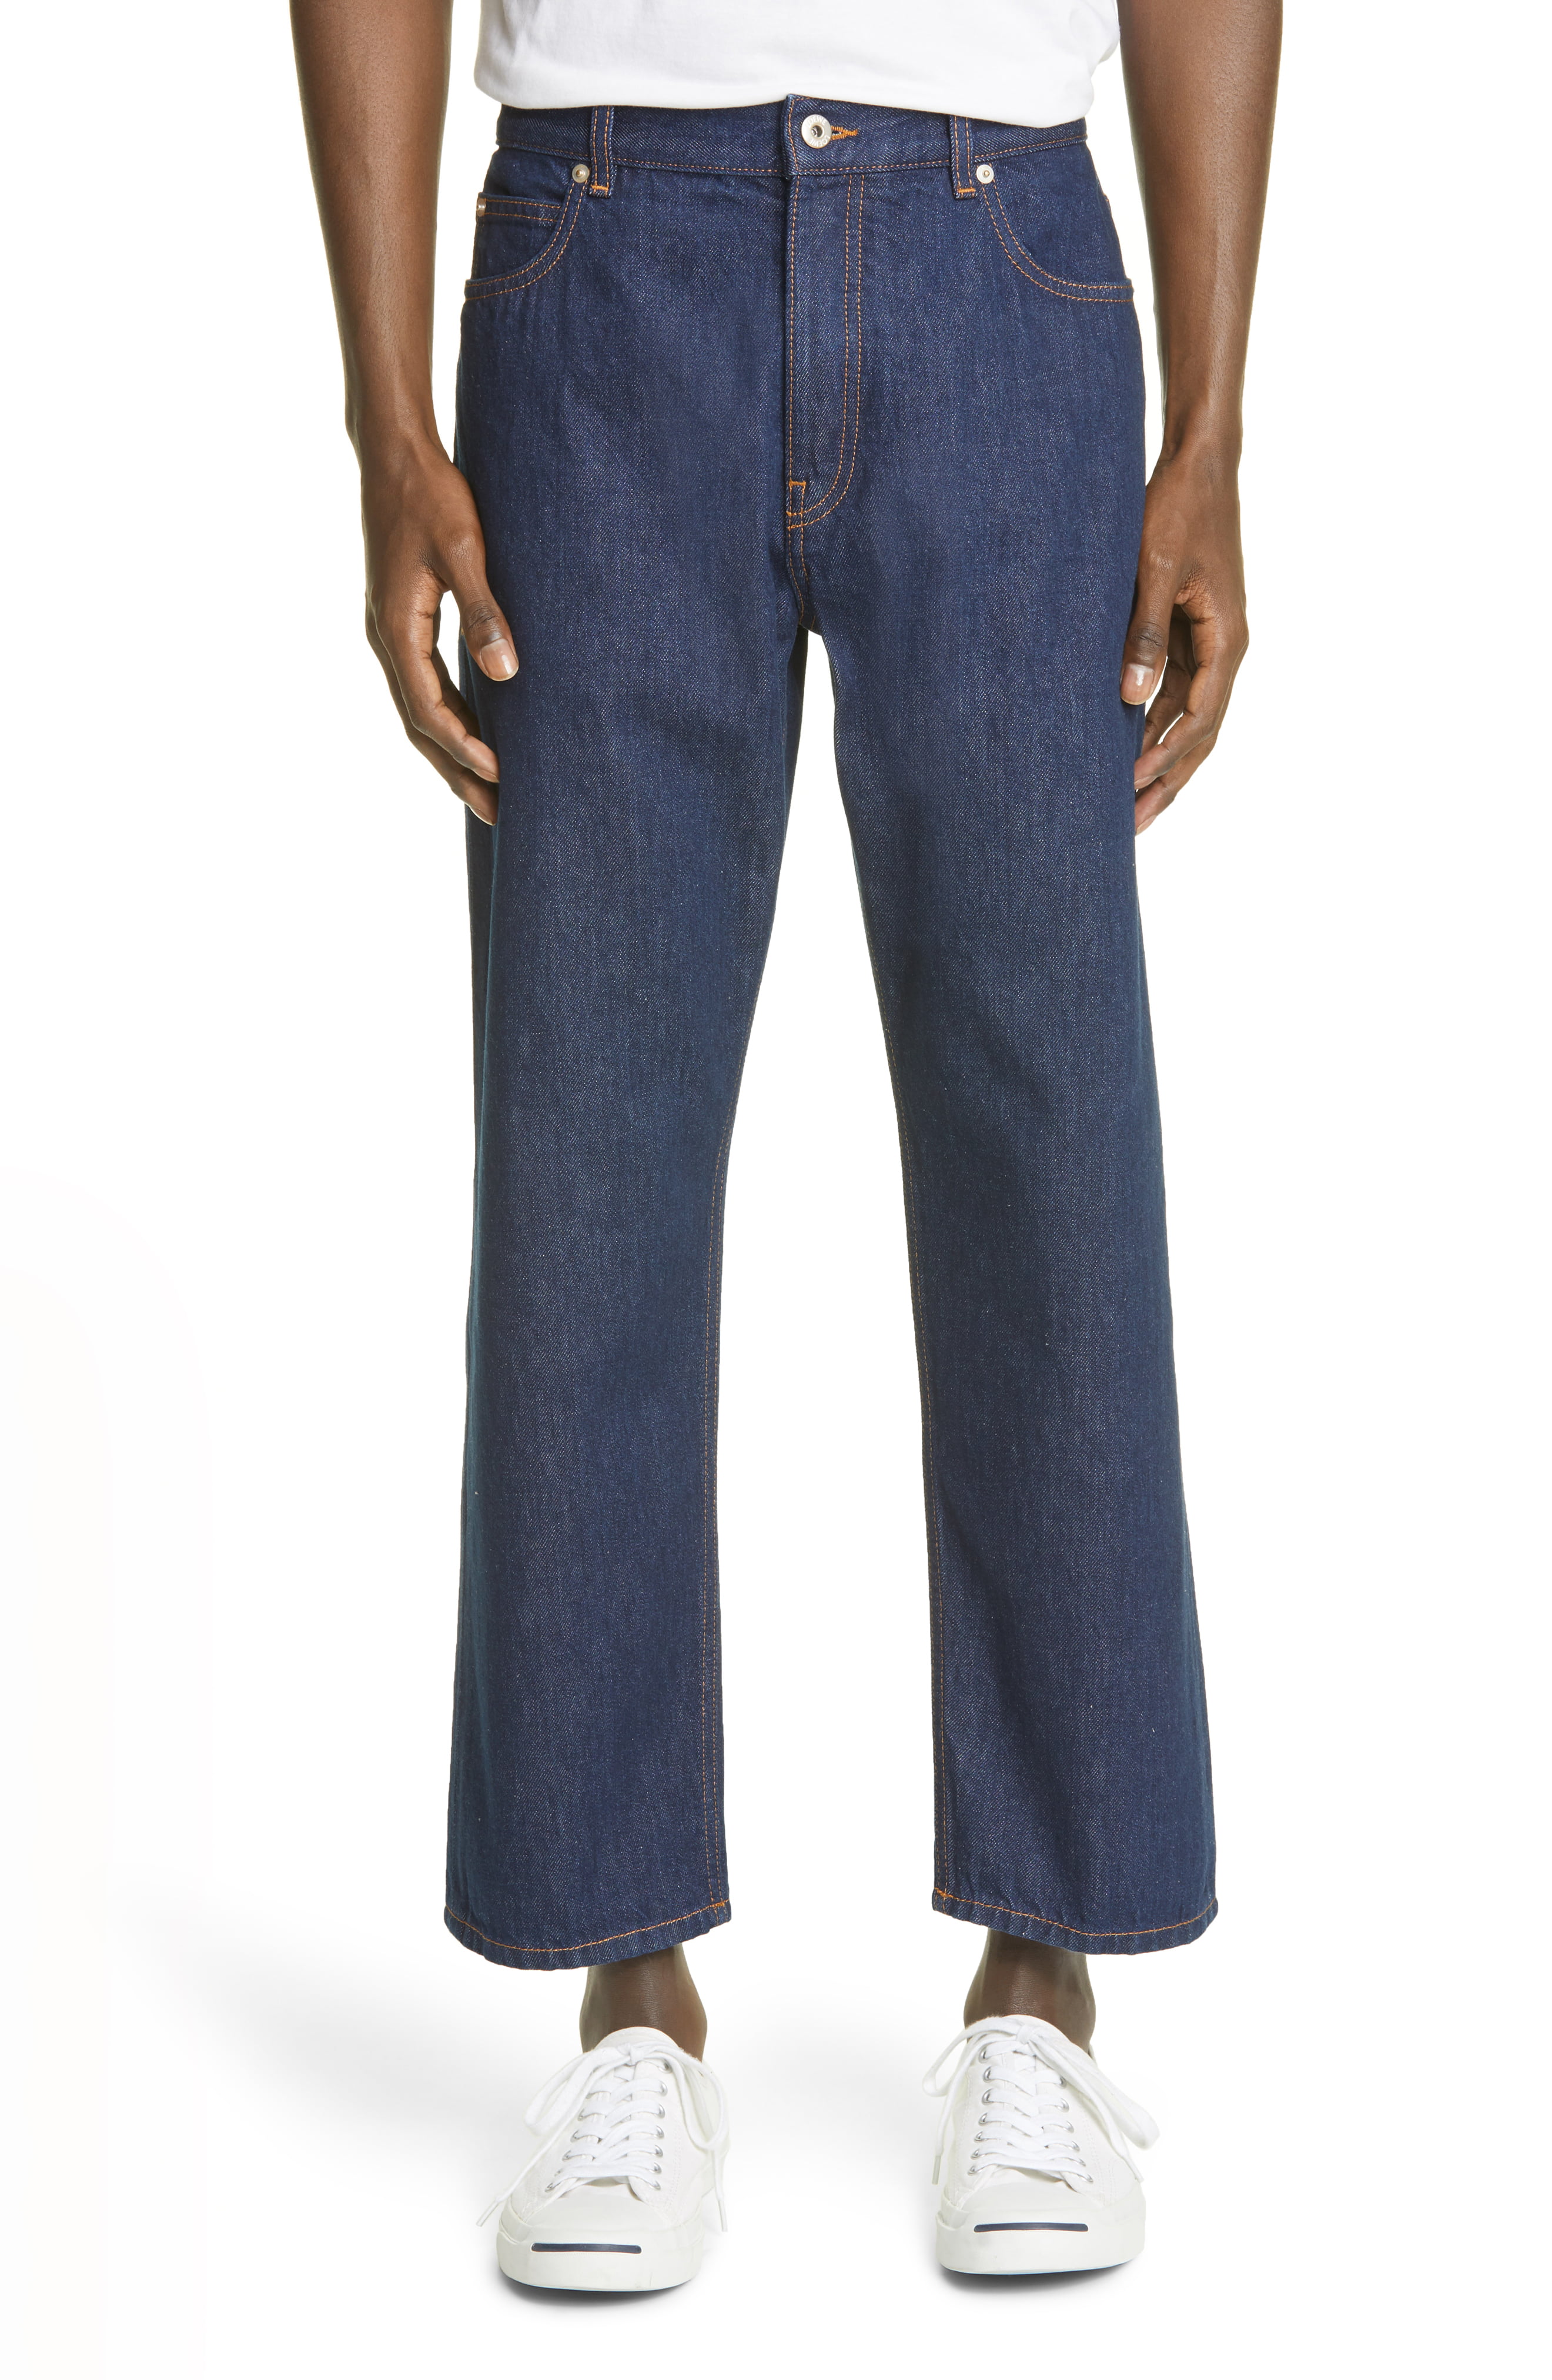 Nordstrom Loewe Crop Jeans